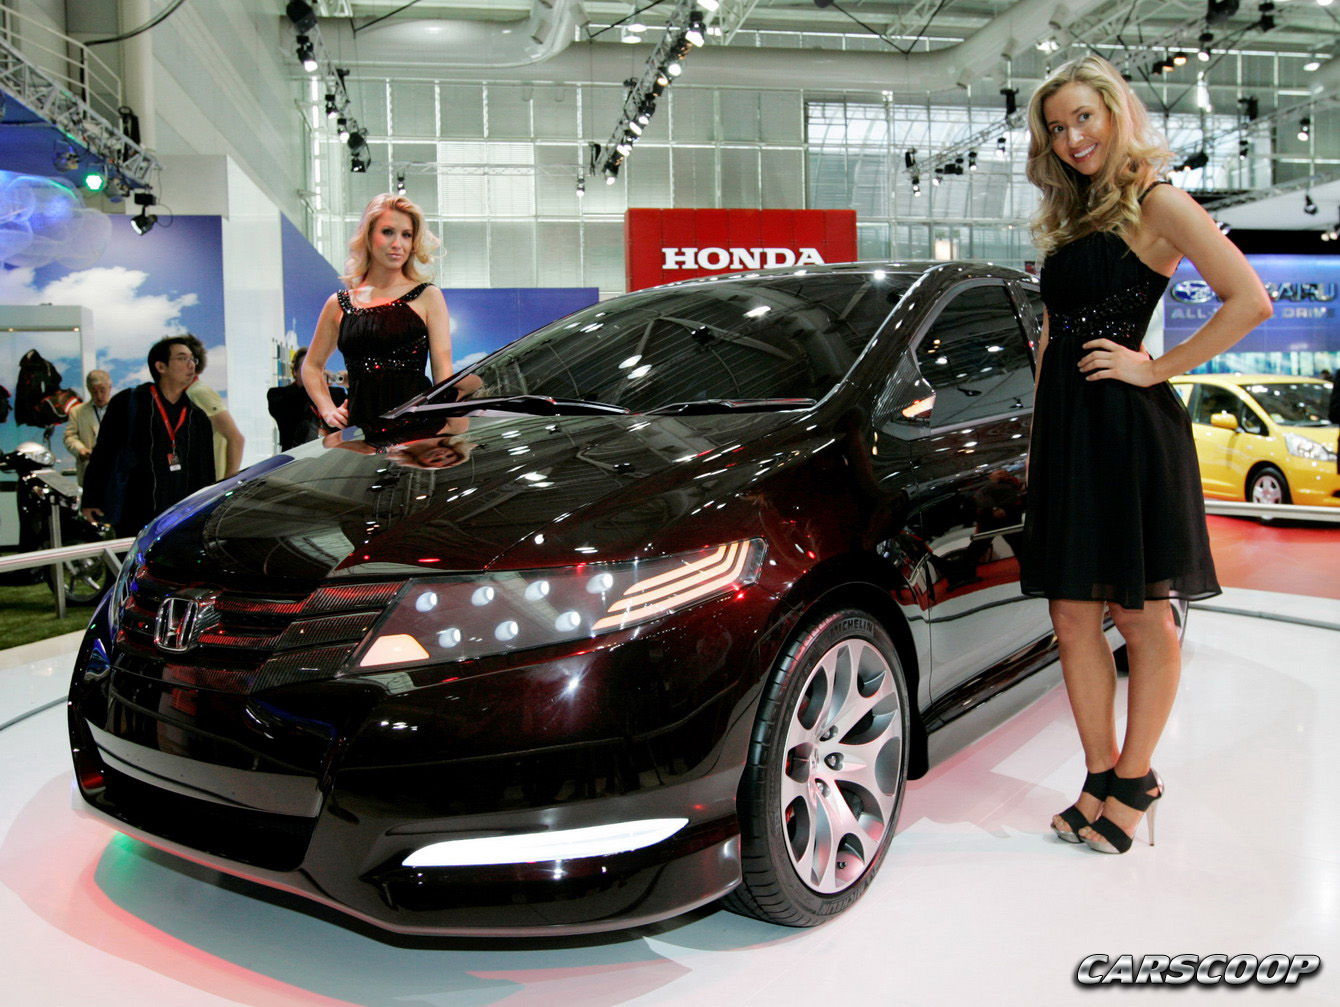 Honda City Concept car unveiled in Australia